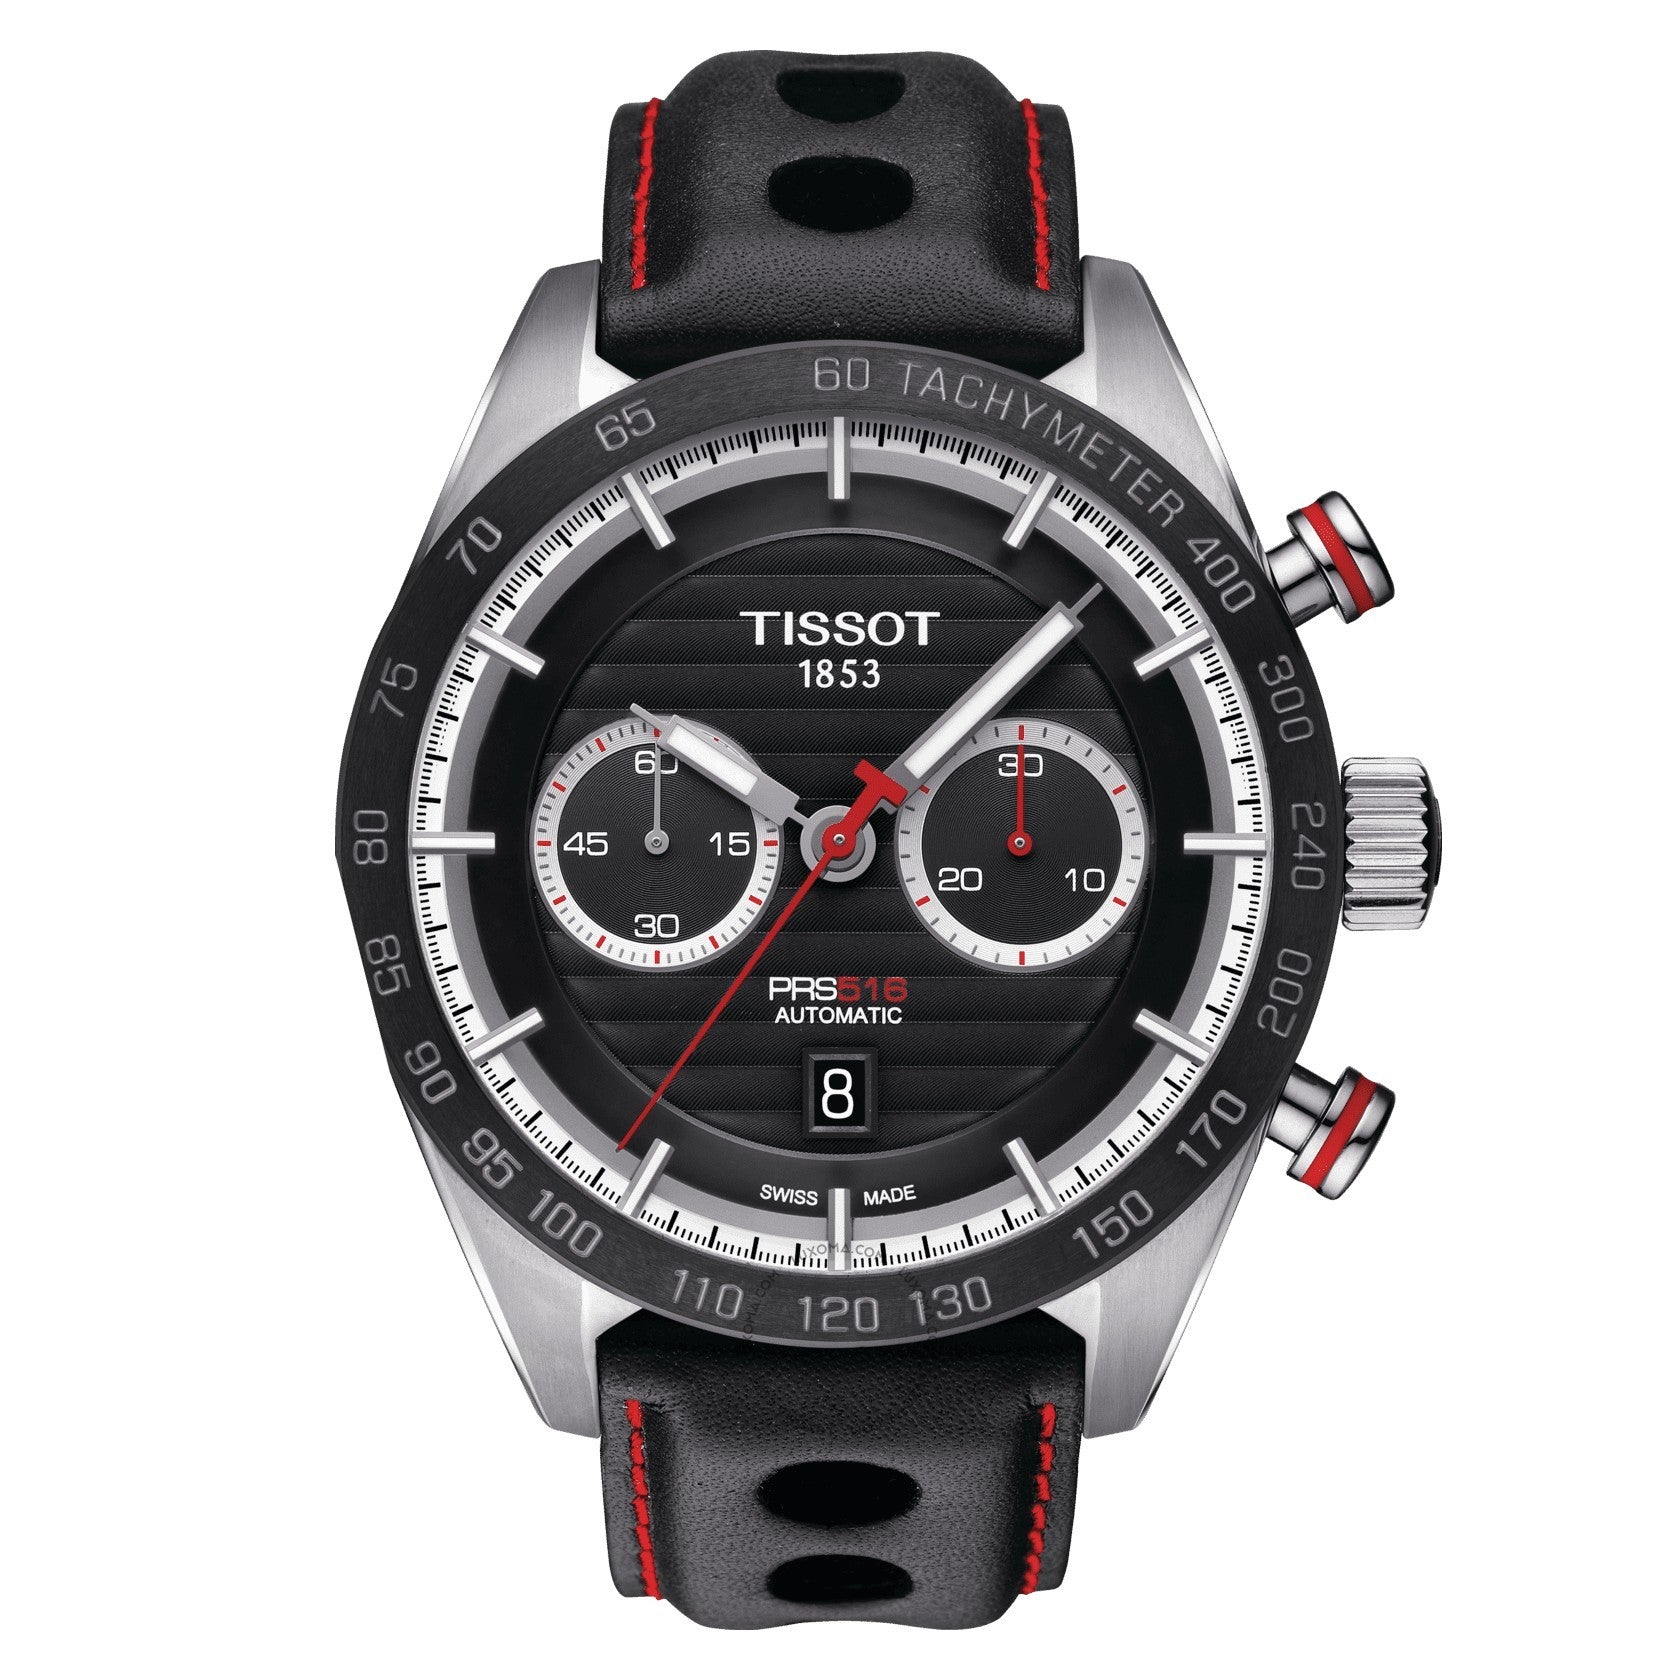 Tissot PRS 516 Chronograph Black Dial Men's Watch T100.427.16.051.00